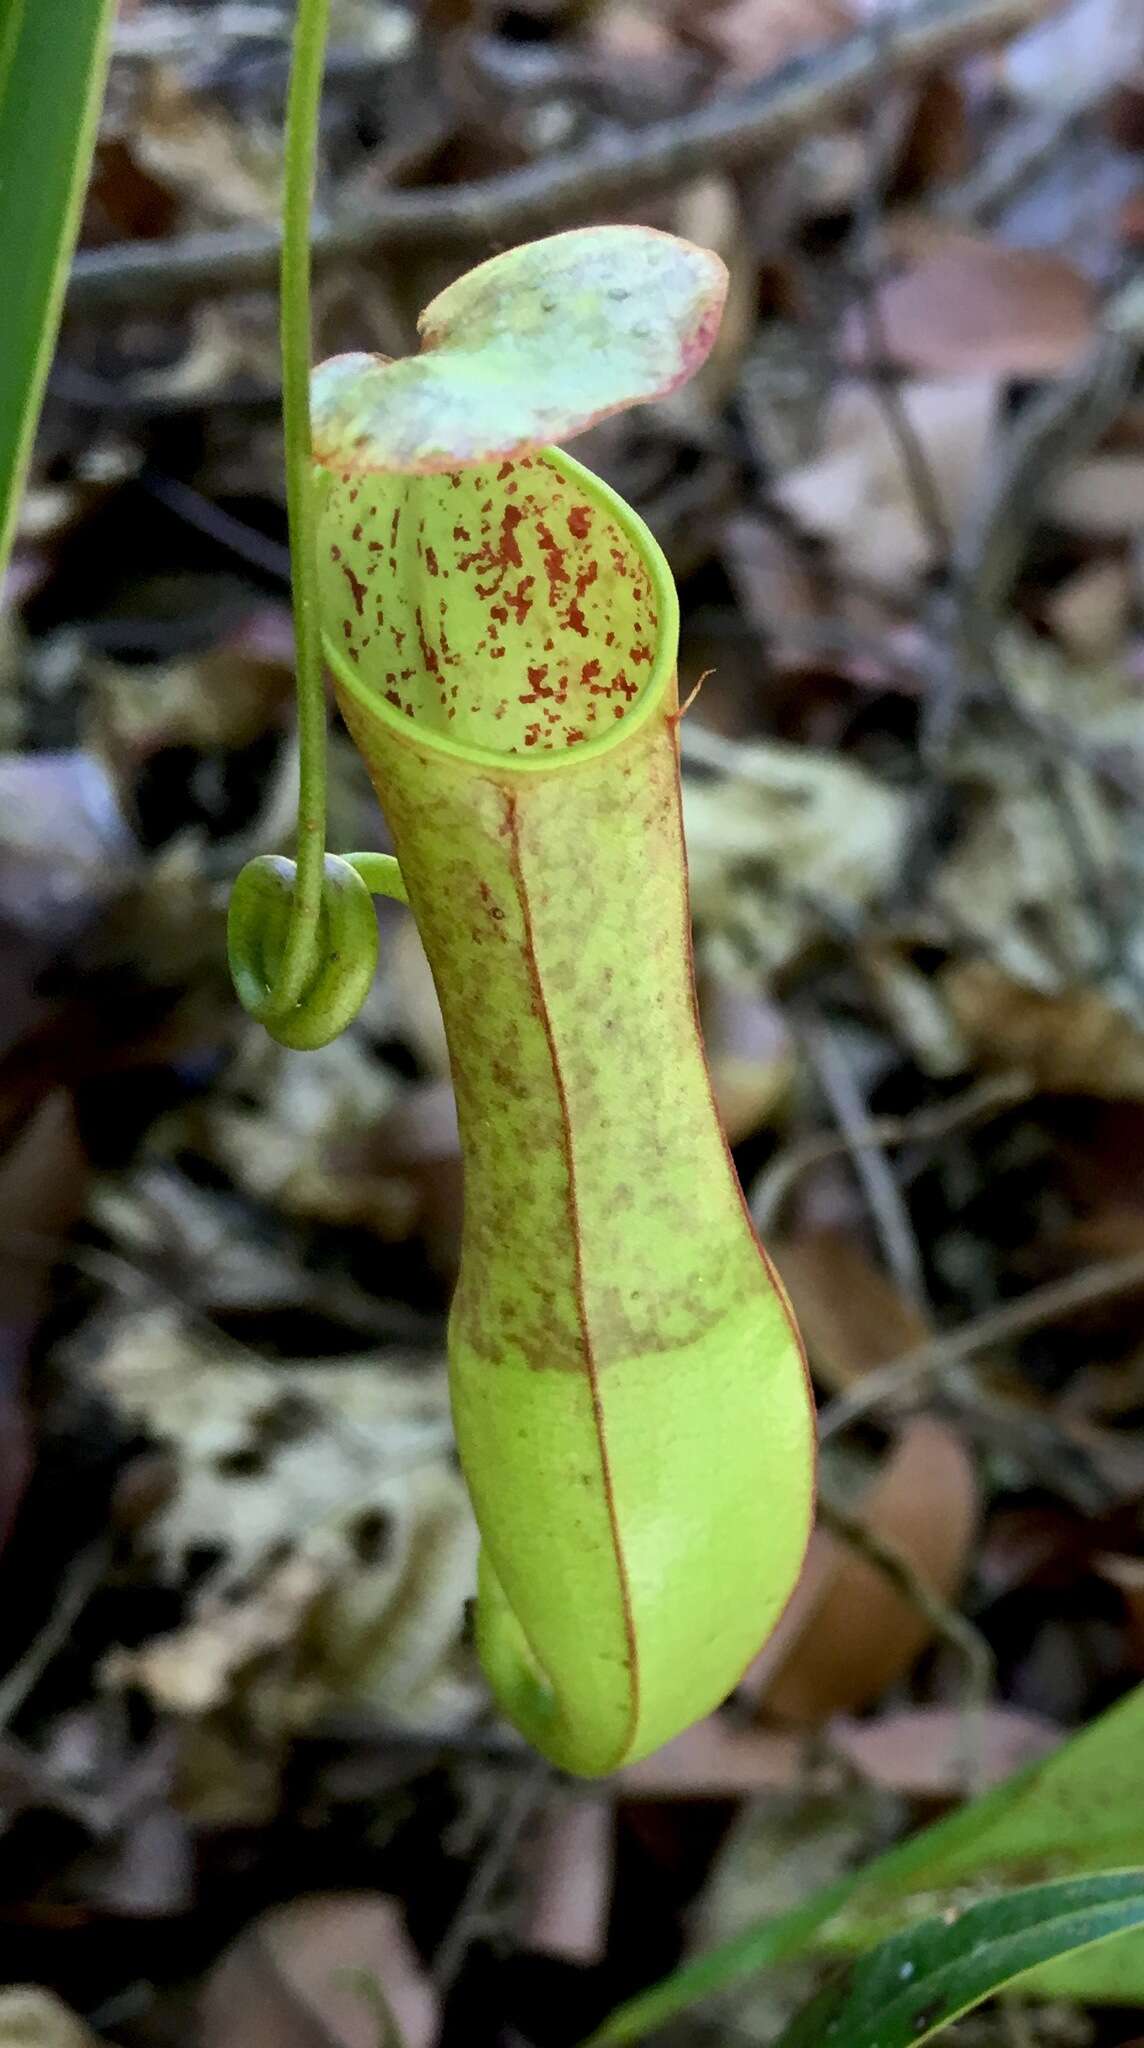 Image of slender pitcher plant